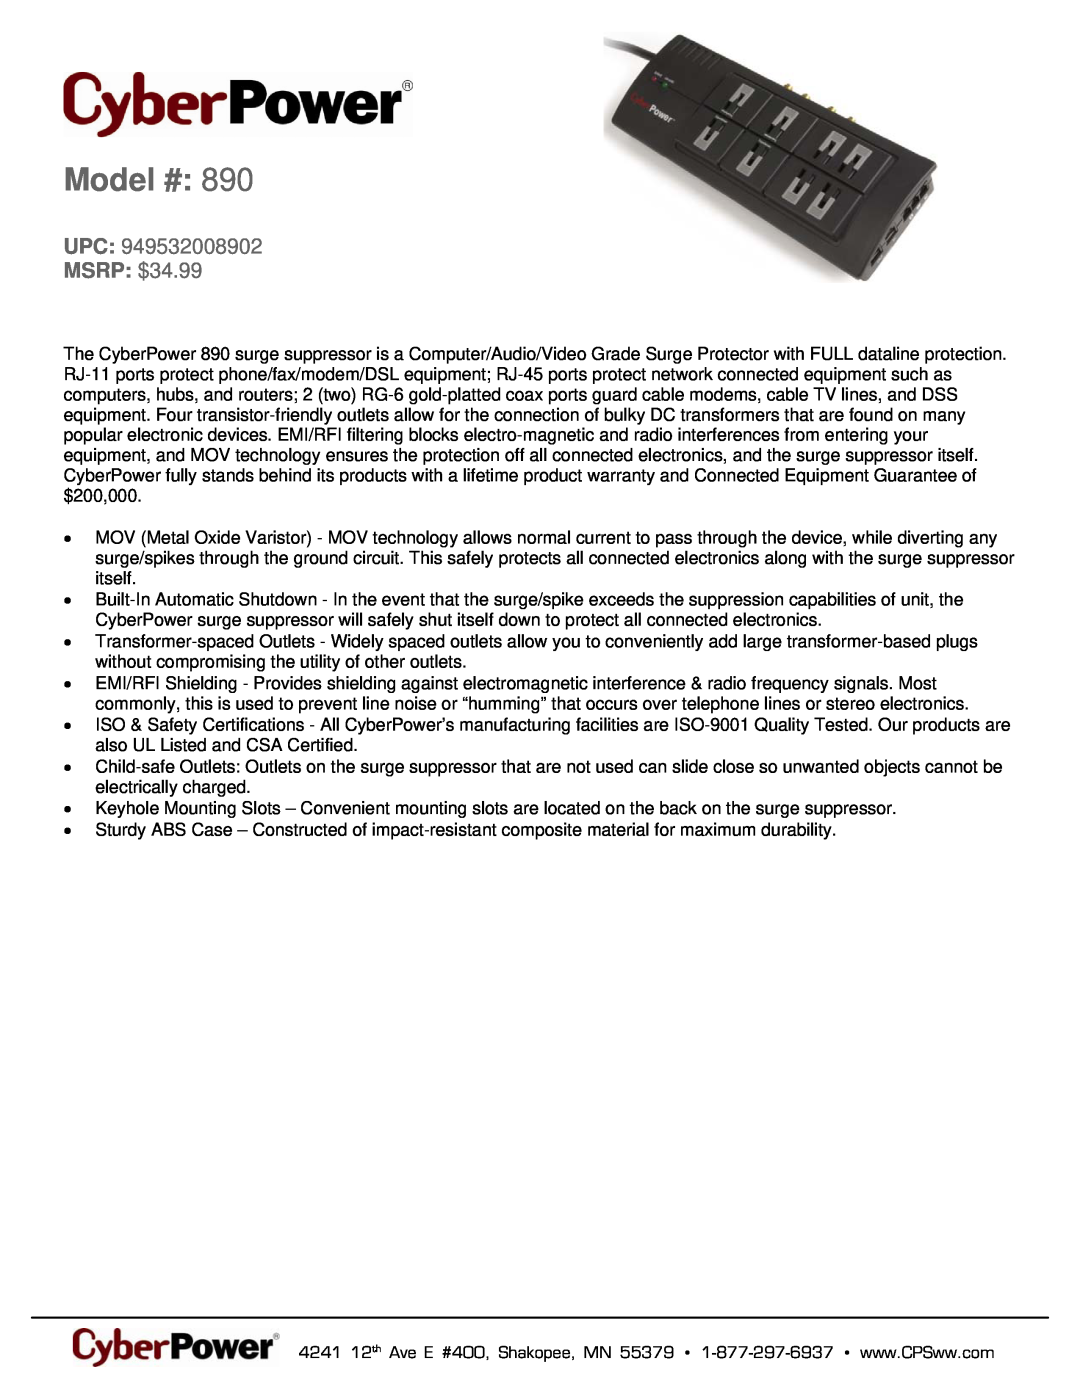 CyberPower Systems 949532008902 warranty Model #, MSRP $34.99 